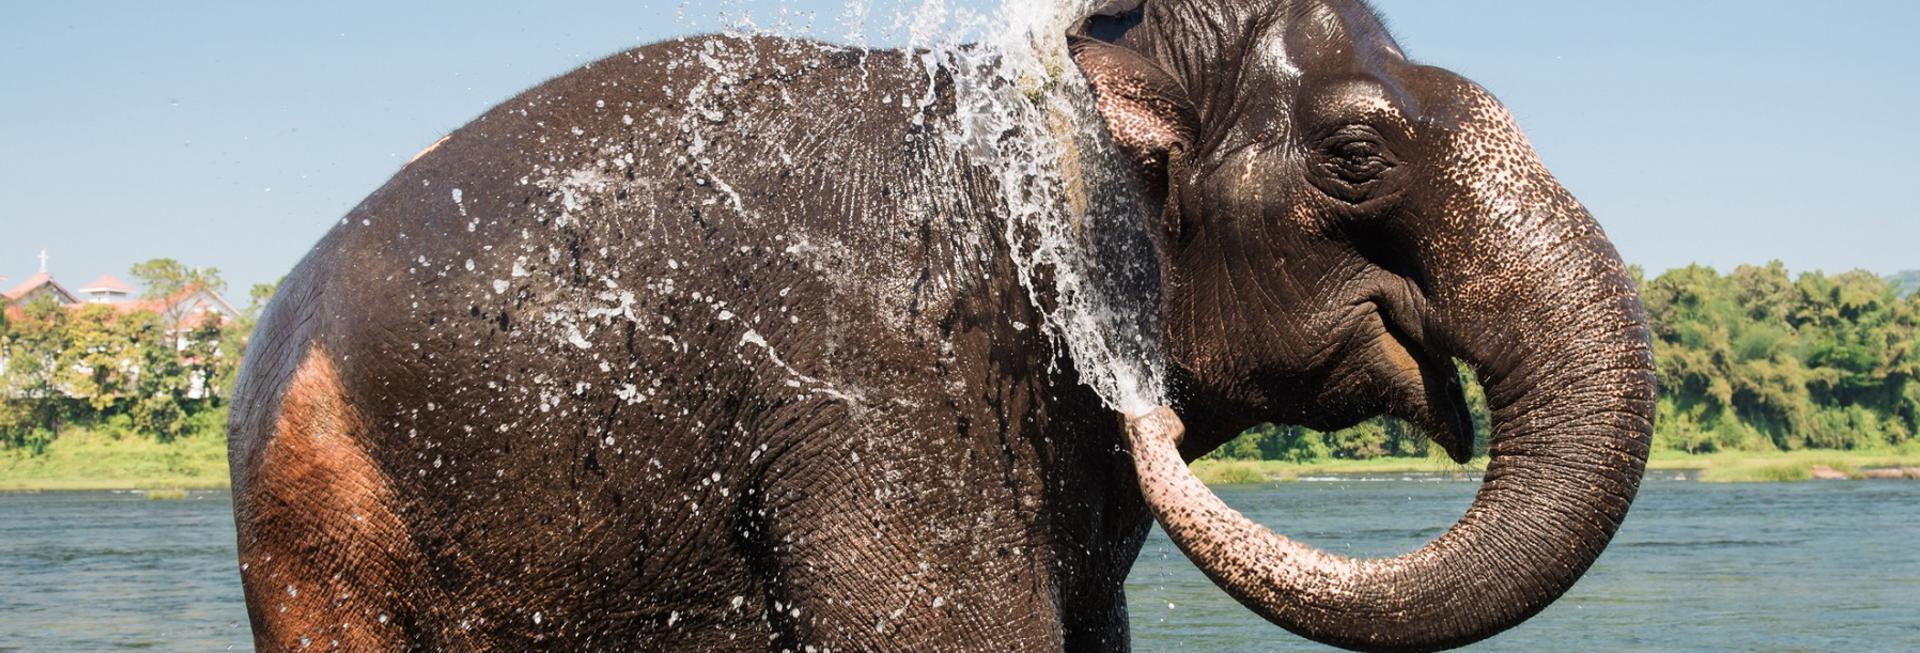 Elephant bathing, Thekkady